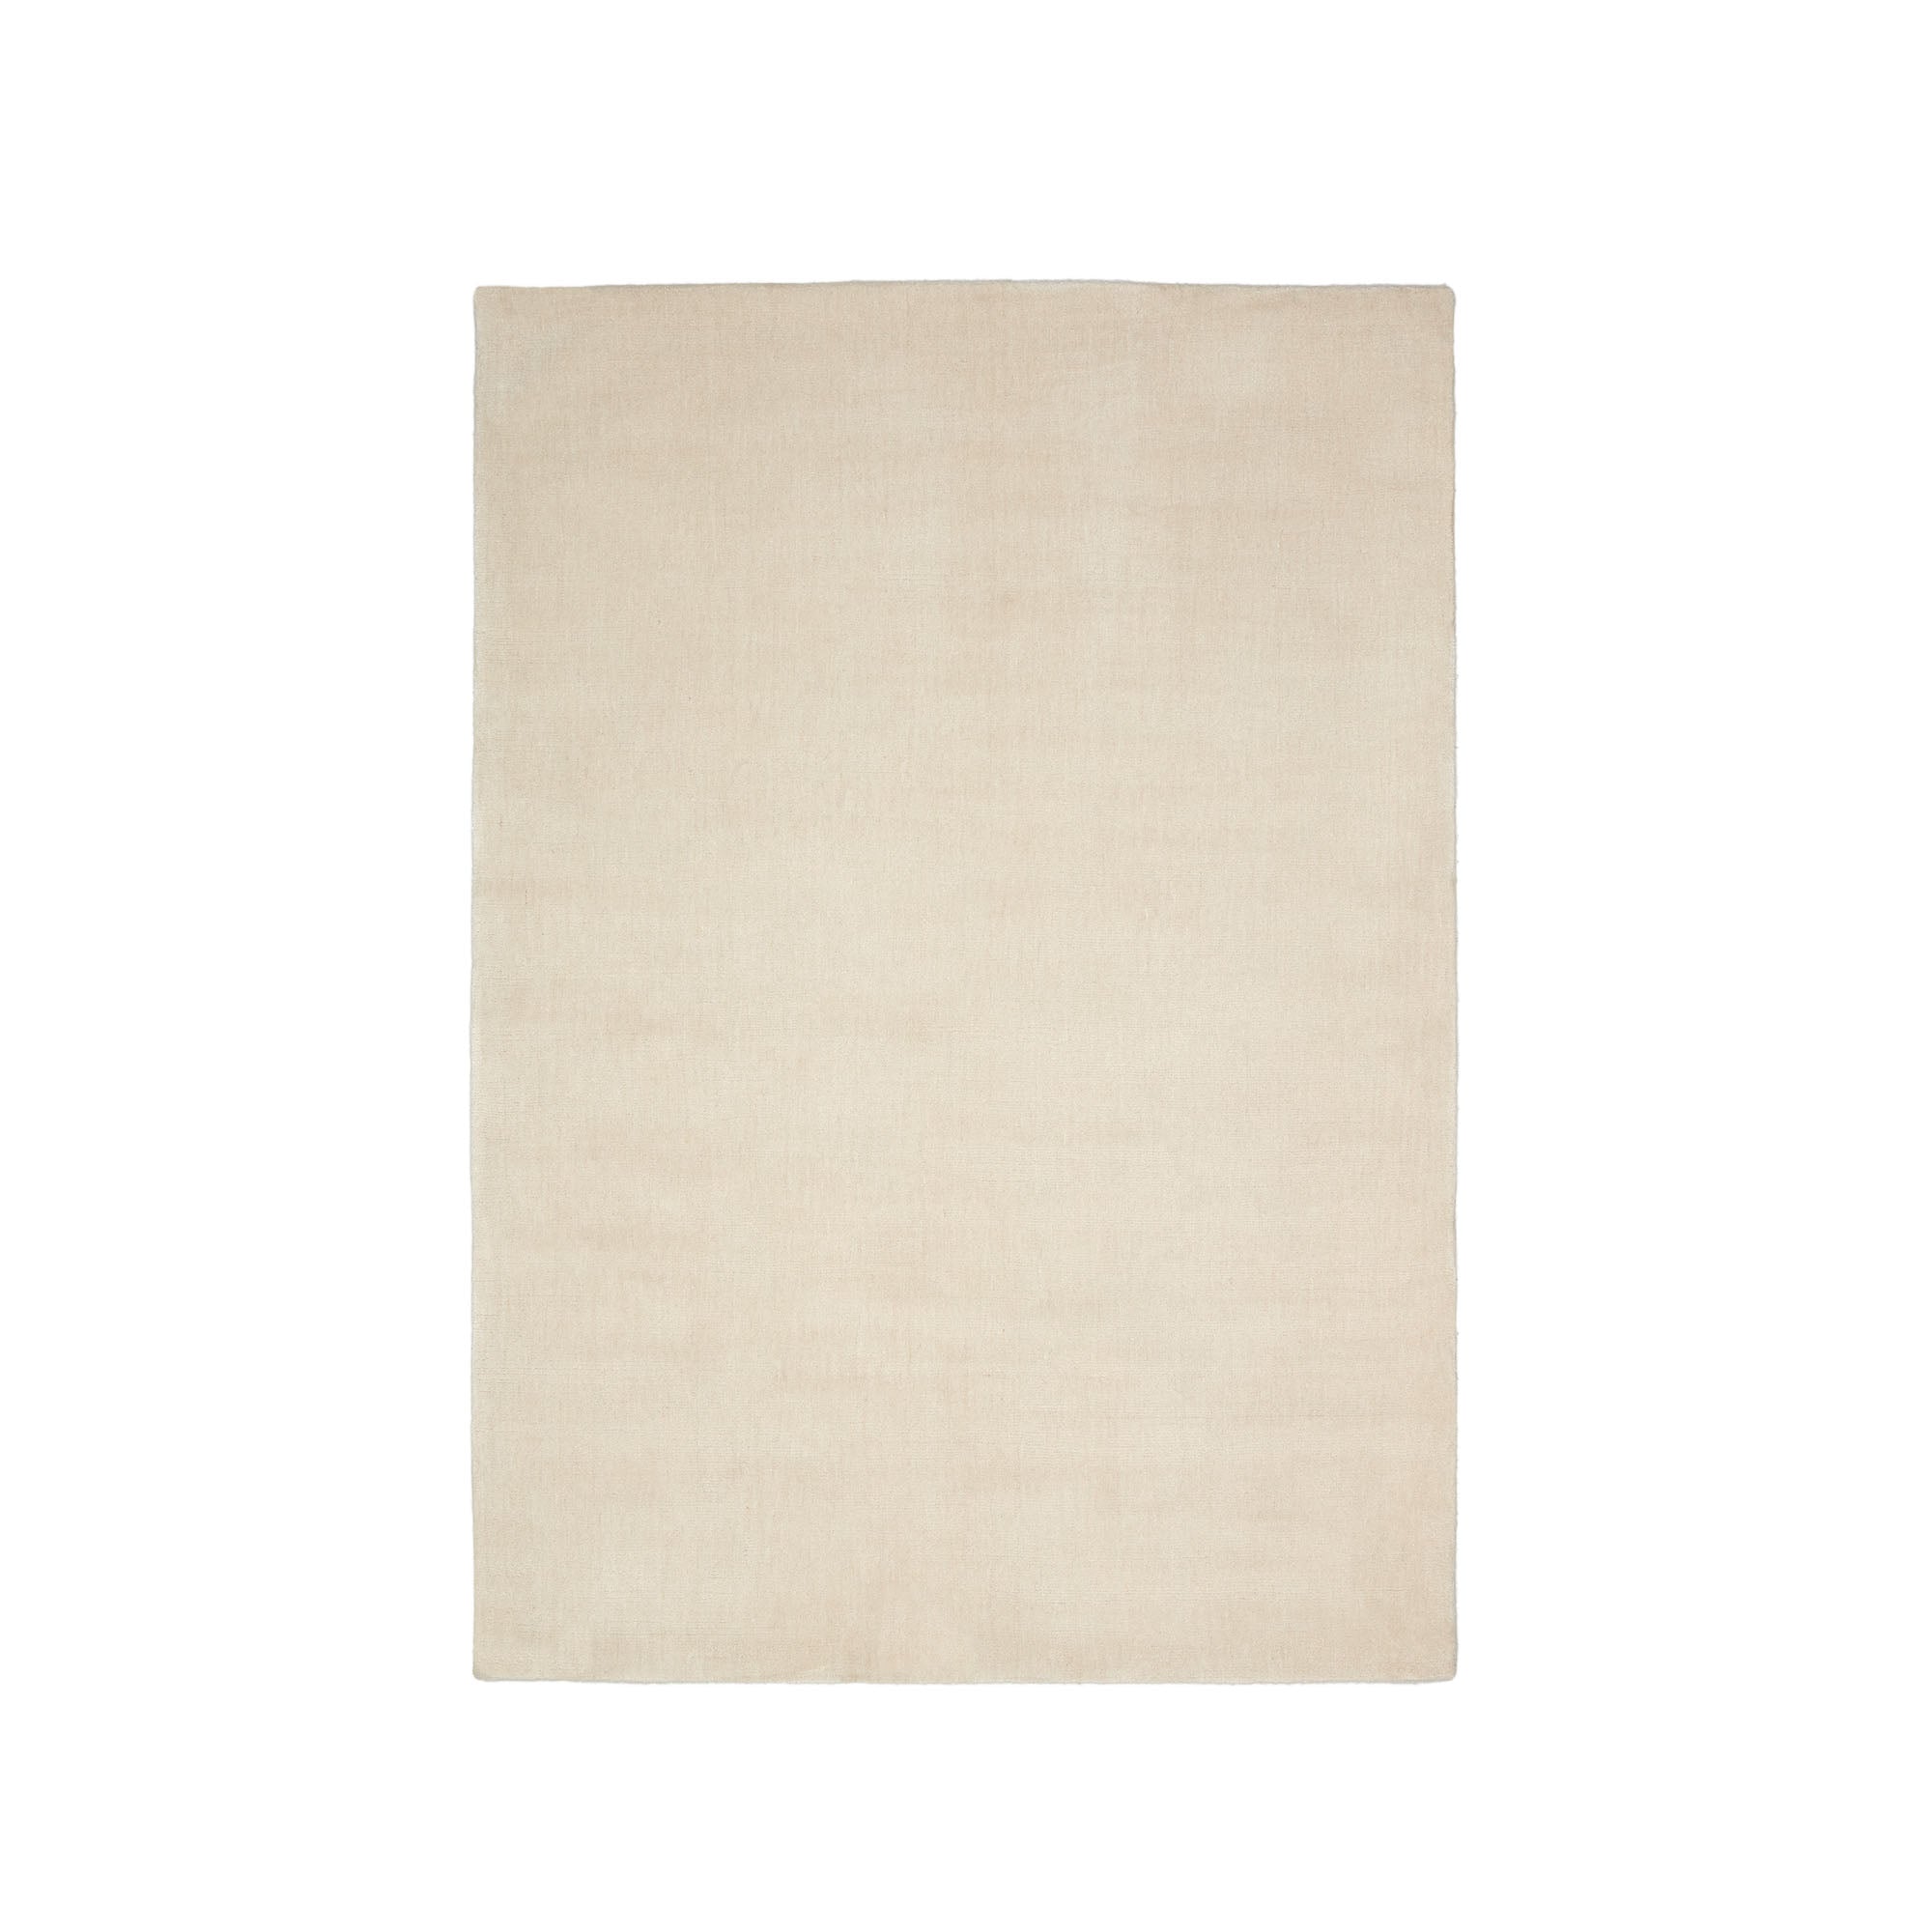 Empuries szőnyeg fehér színben, 160 x 230 cm